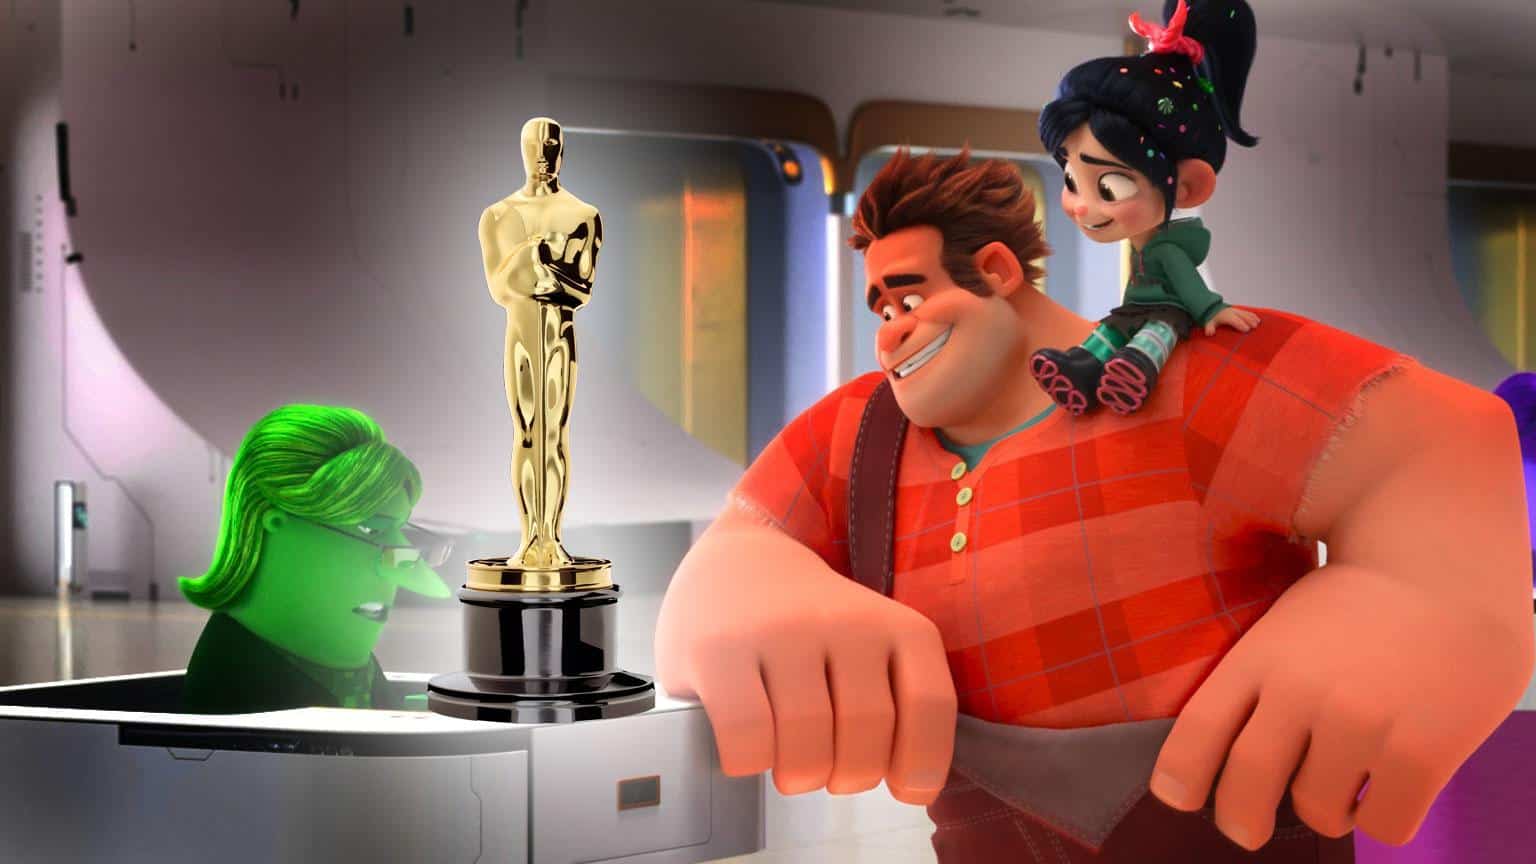 Oscar Verleihung 2019 Chaos im Netz nominiert